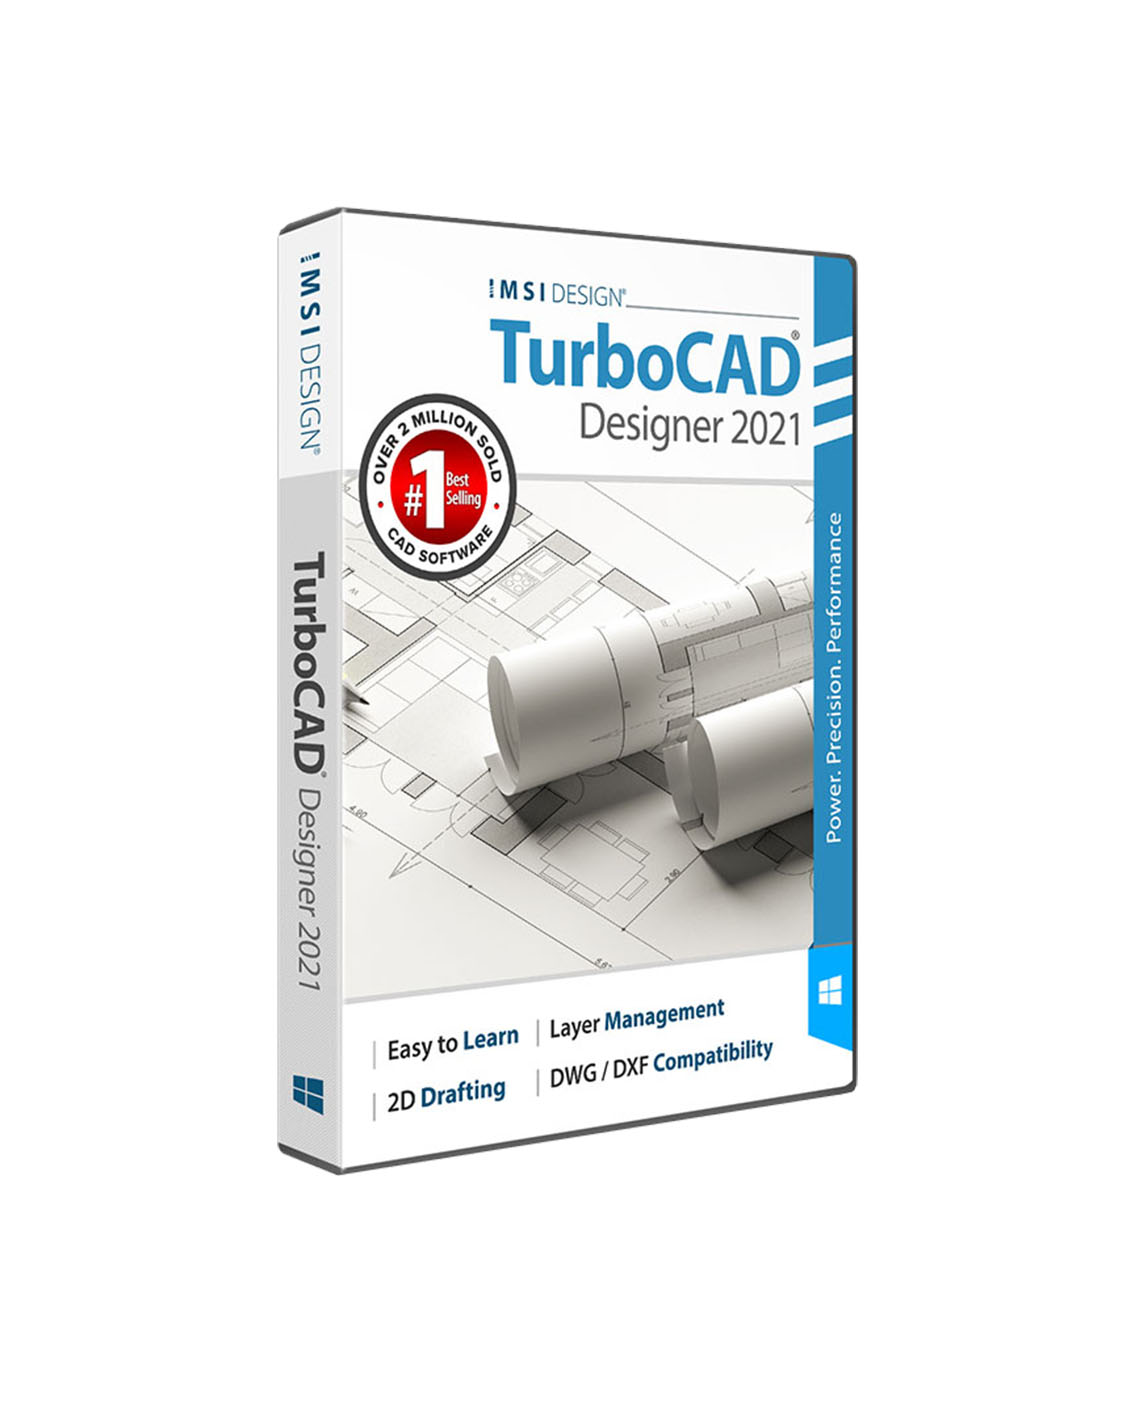 TurboCAD 2021 Designer